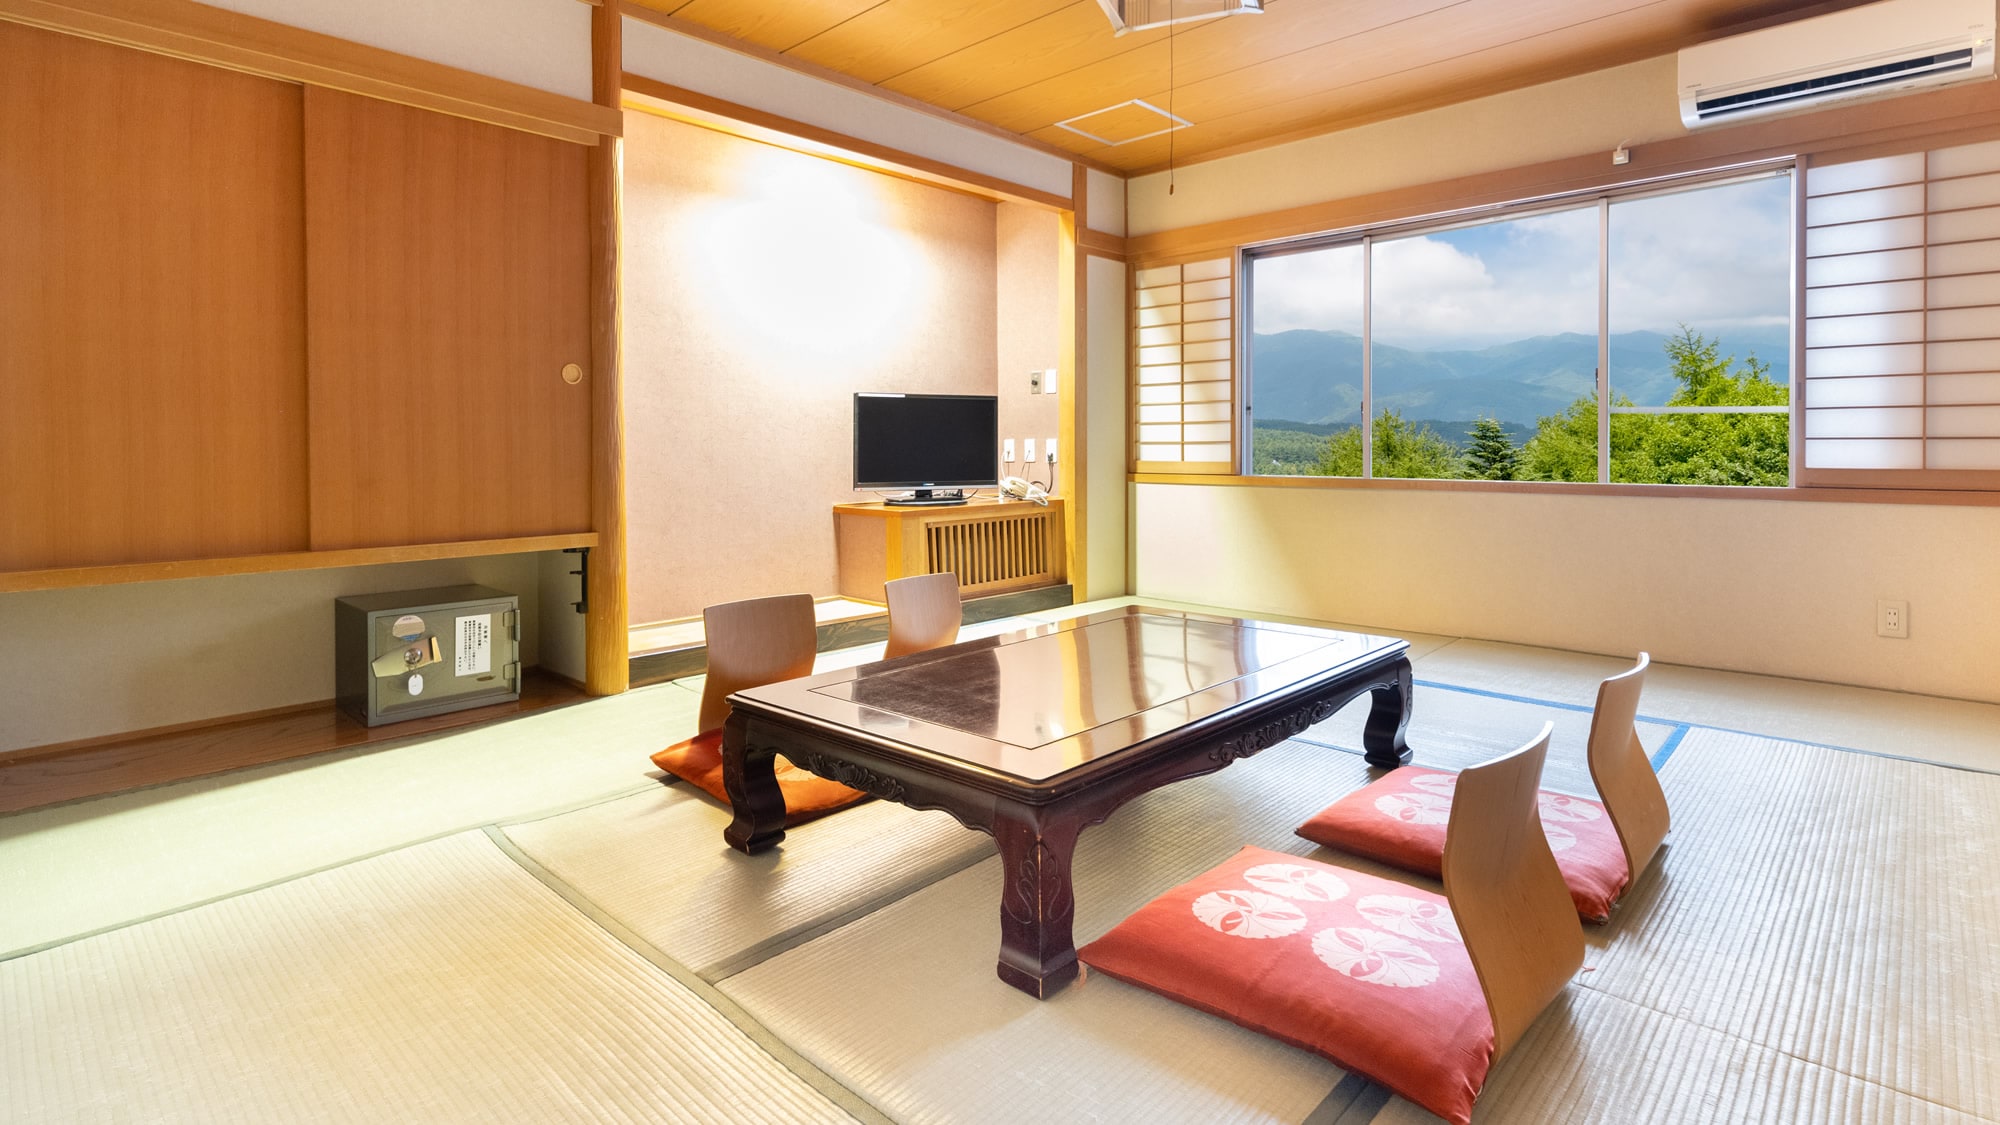 [ห้องสไตล์ญี่ปุ่น 10 เสื่อทาทามิ + 8 เสื่อทาทามิ] ห้องที่มีห้องสไตล์ญี่ปุ่นอิสระสองห้อง